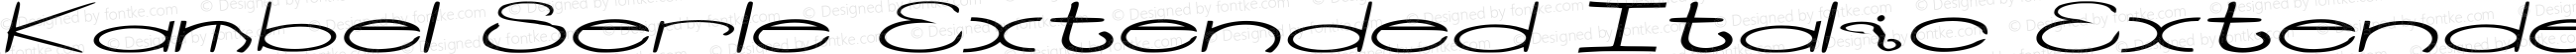 Kambel Serle's Custom Font (Extended Italic)